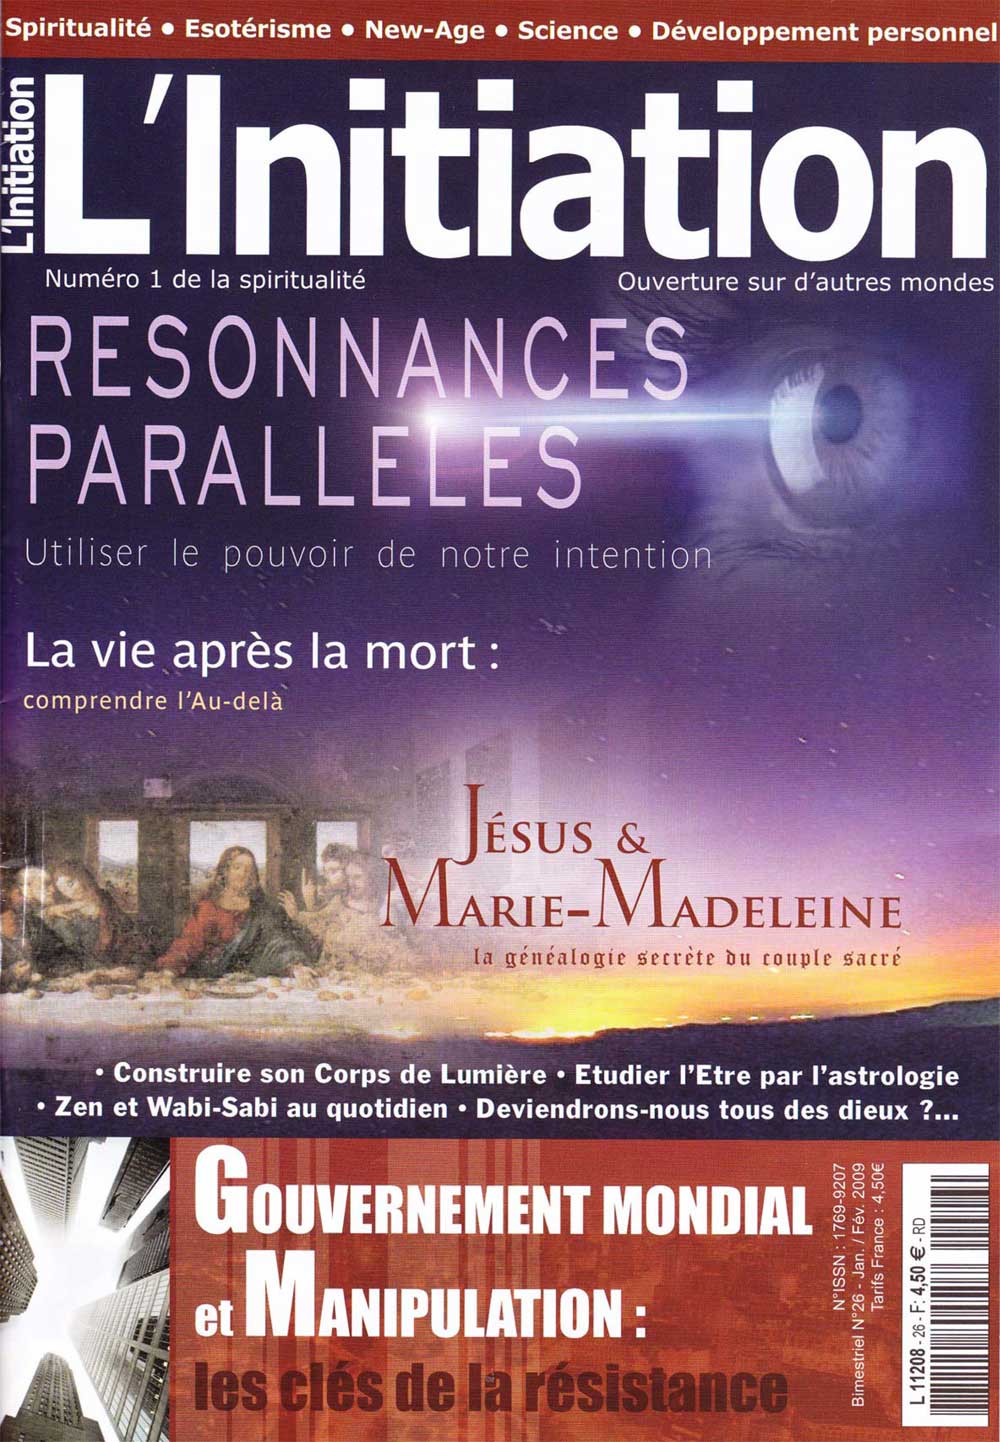 L'Initiation - Resonnances paralleles - janvier février 2009